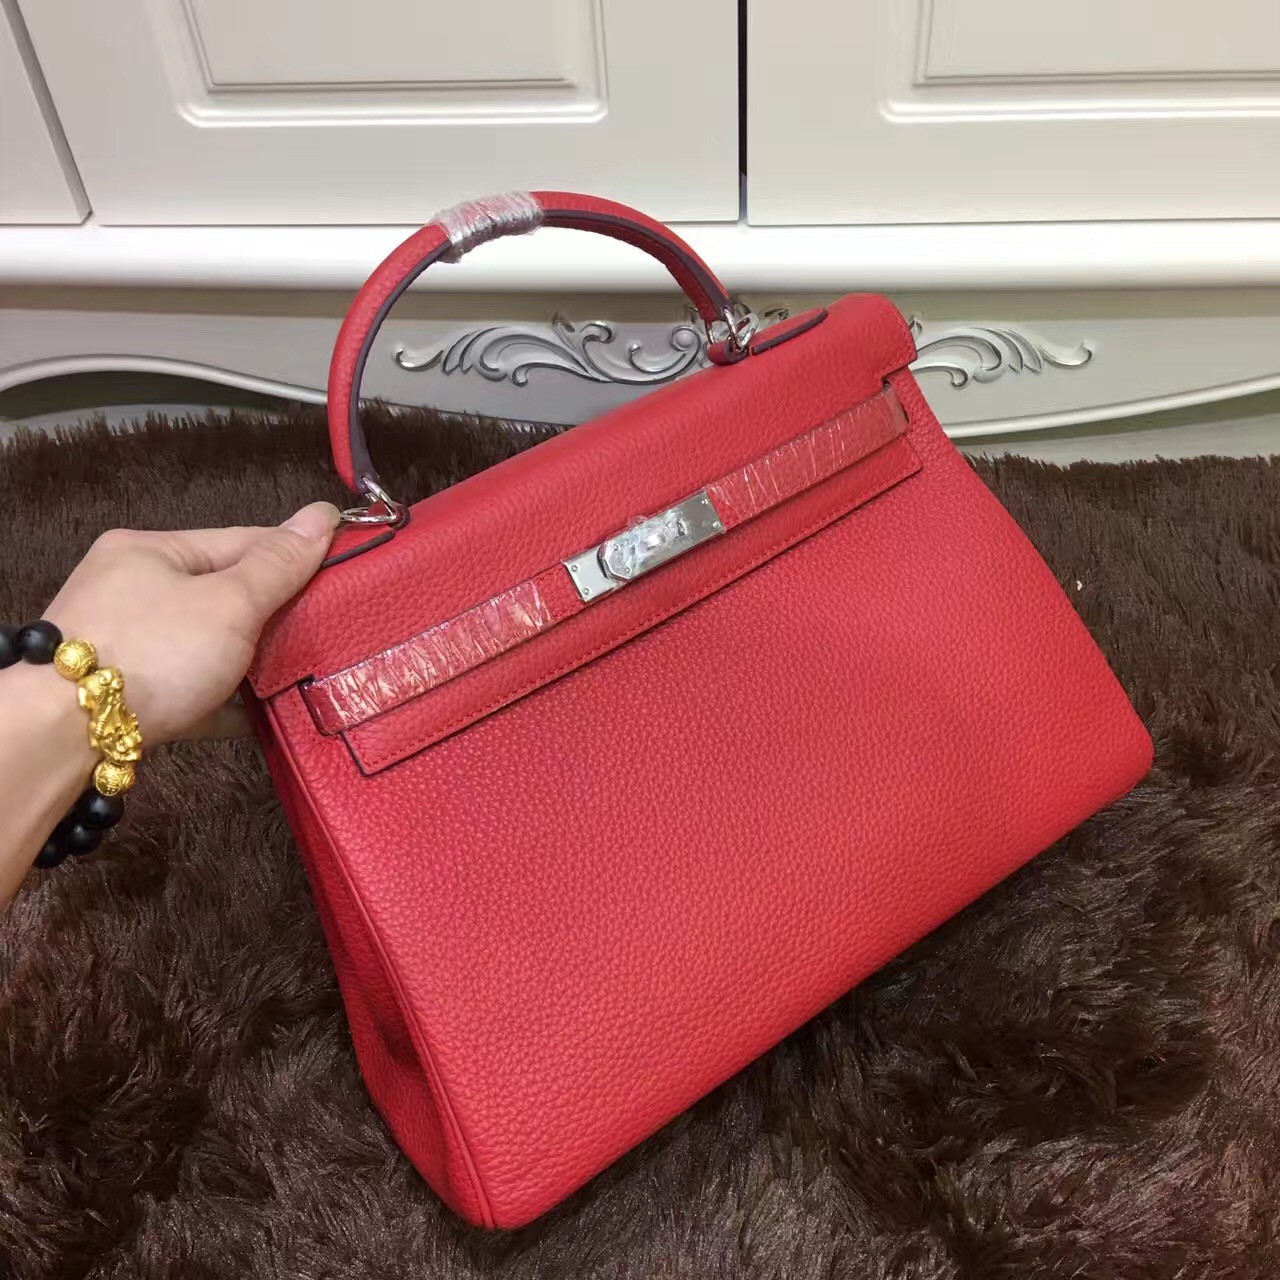 Hermes Kelly 32cm Togo leather handbag red silver